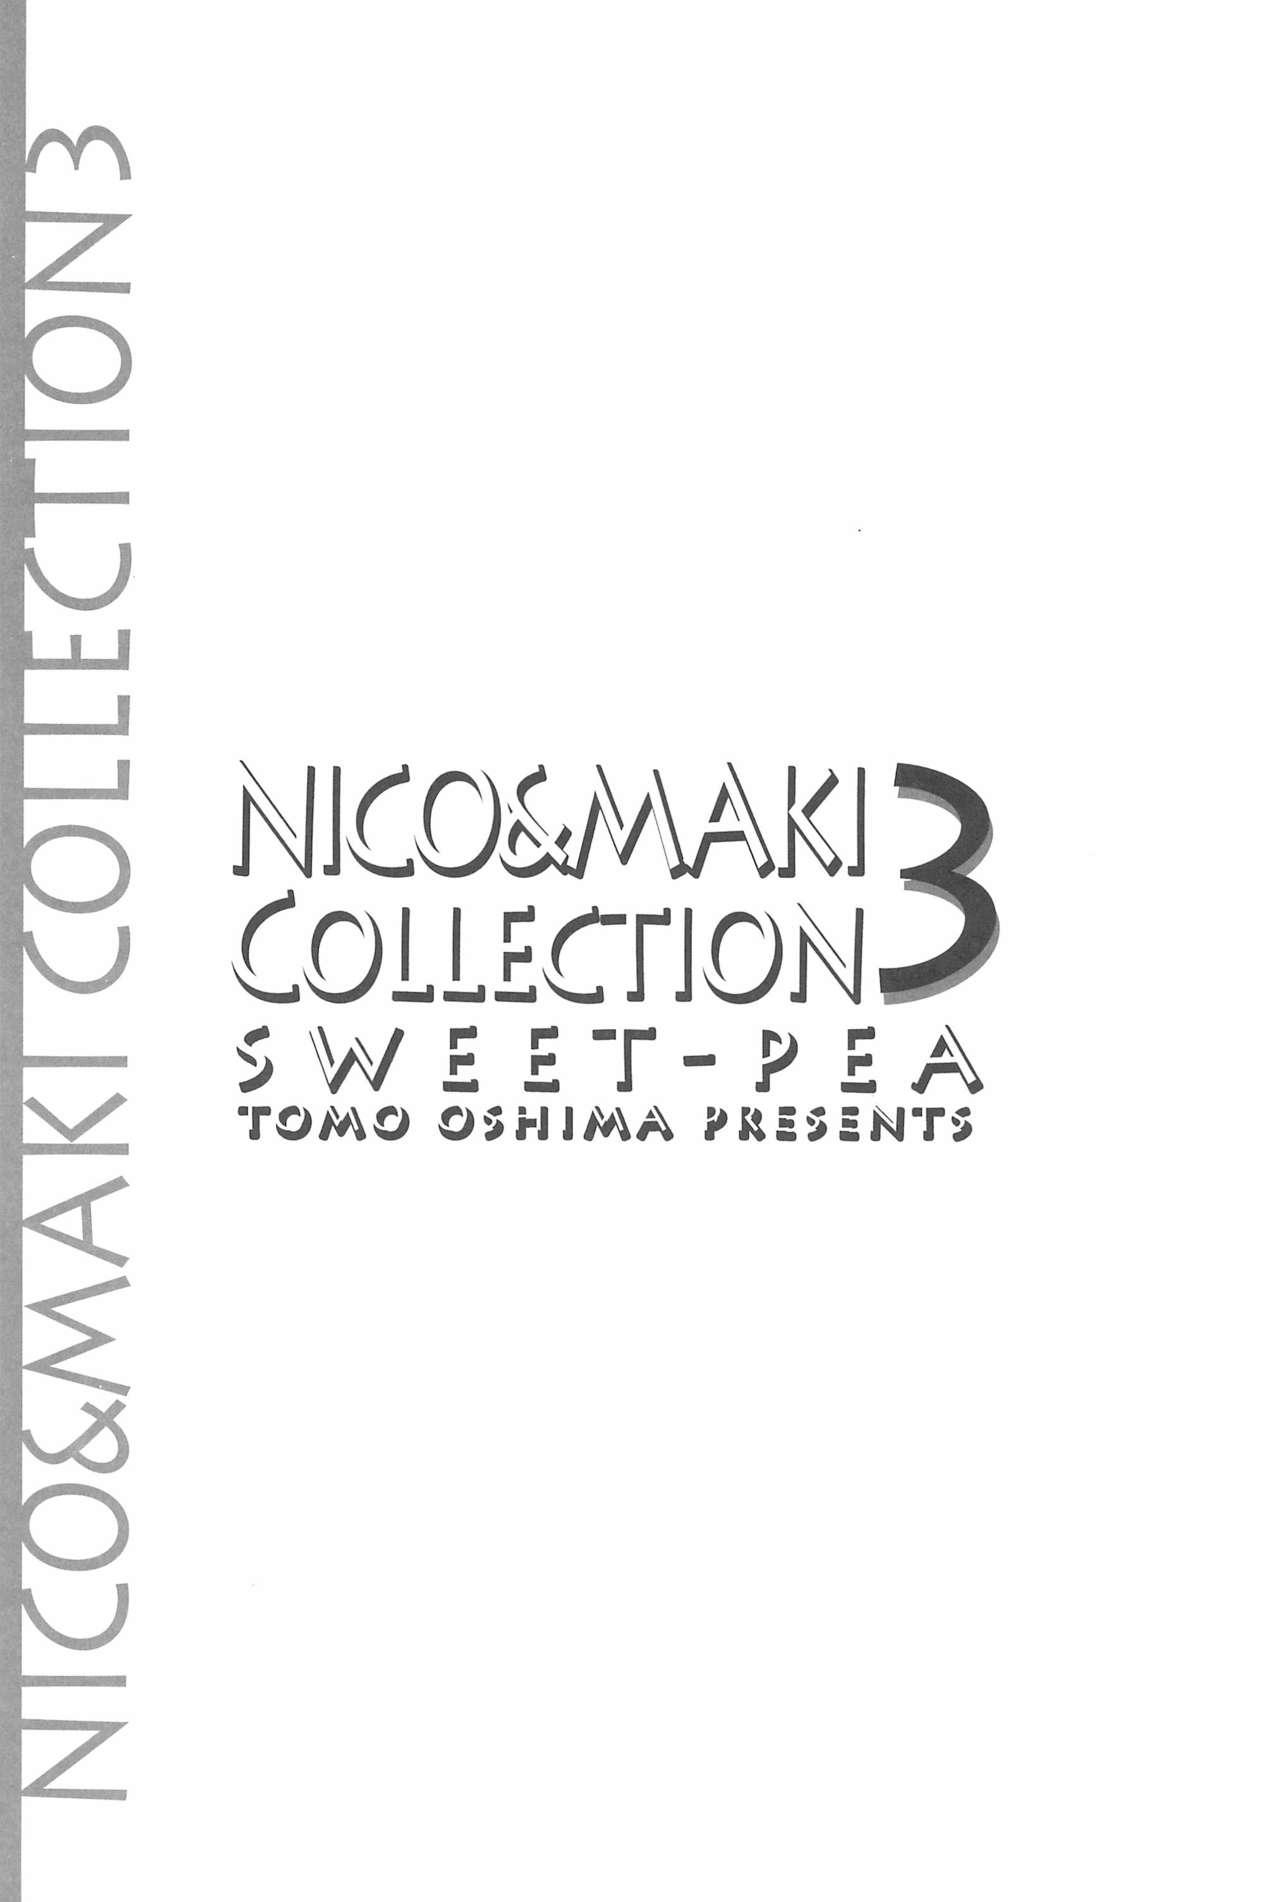 NICO & MAKI COLLECTION 3 189